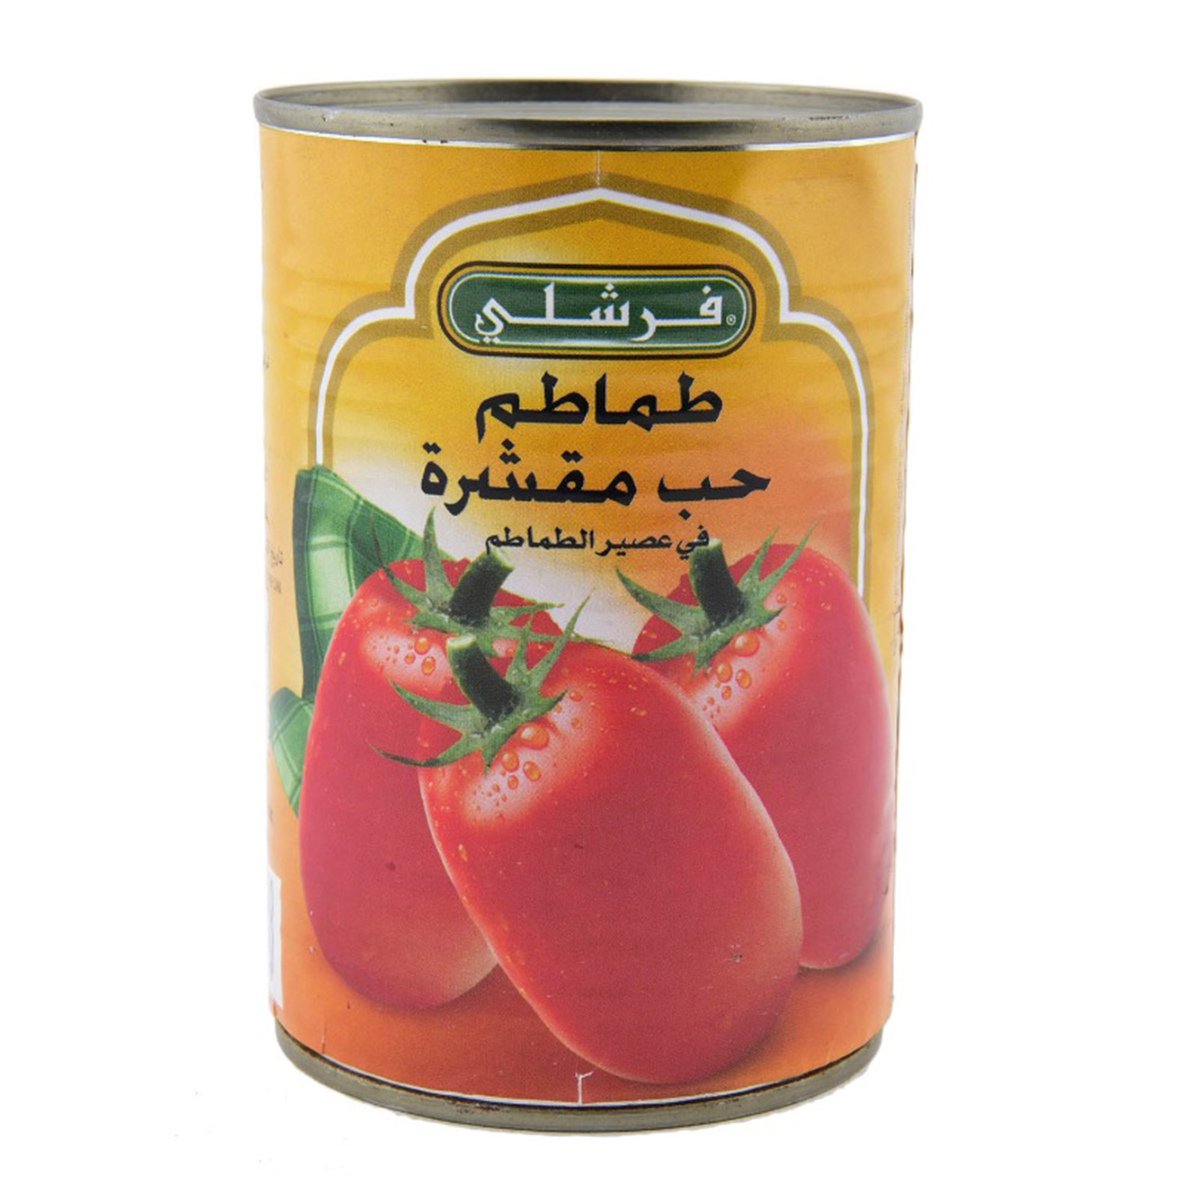 اشتري قم بشراء فرشلي طماطم البرقوق الكاملة المقشرة في عصير الطماطم 400 جم Online at Best Price من الموقع - من لولو هايبر ماركت Cand Tomatoes&Puree في السعودية